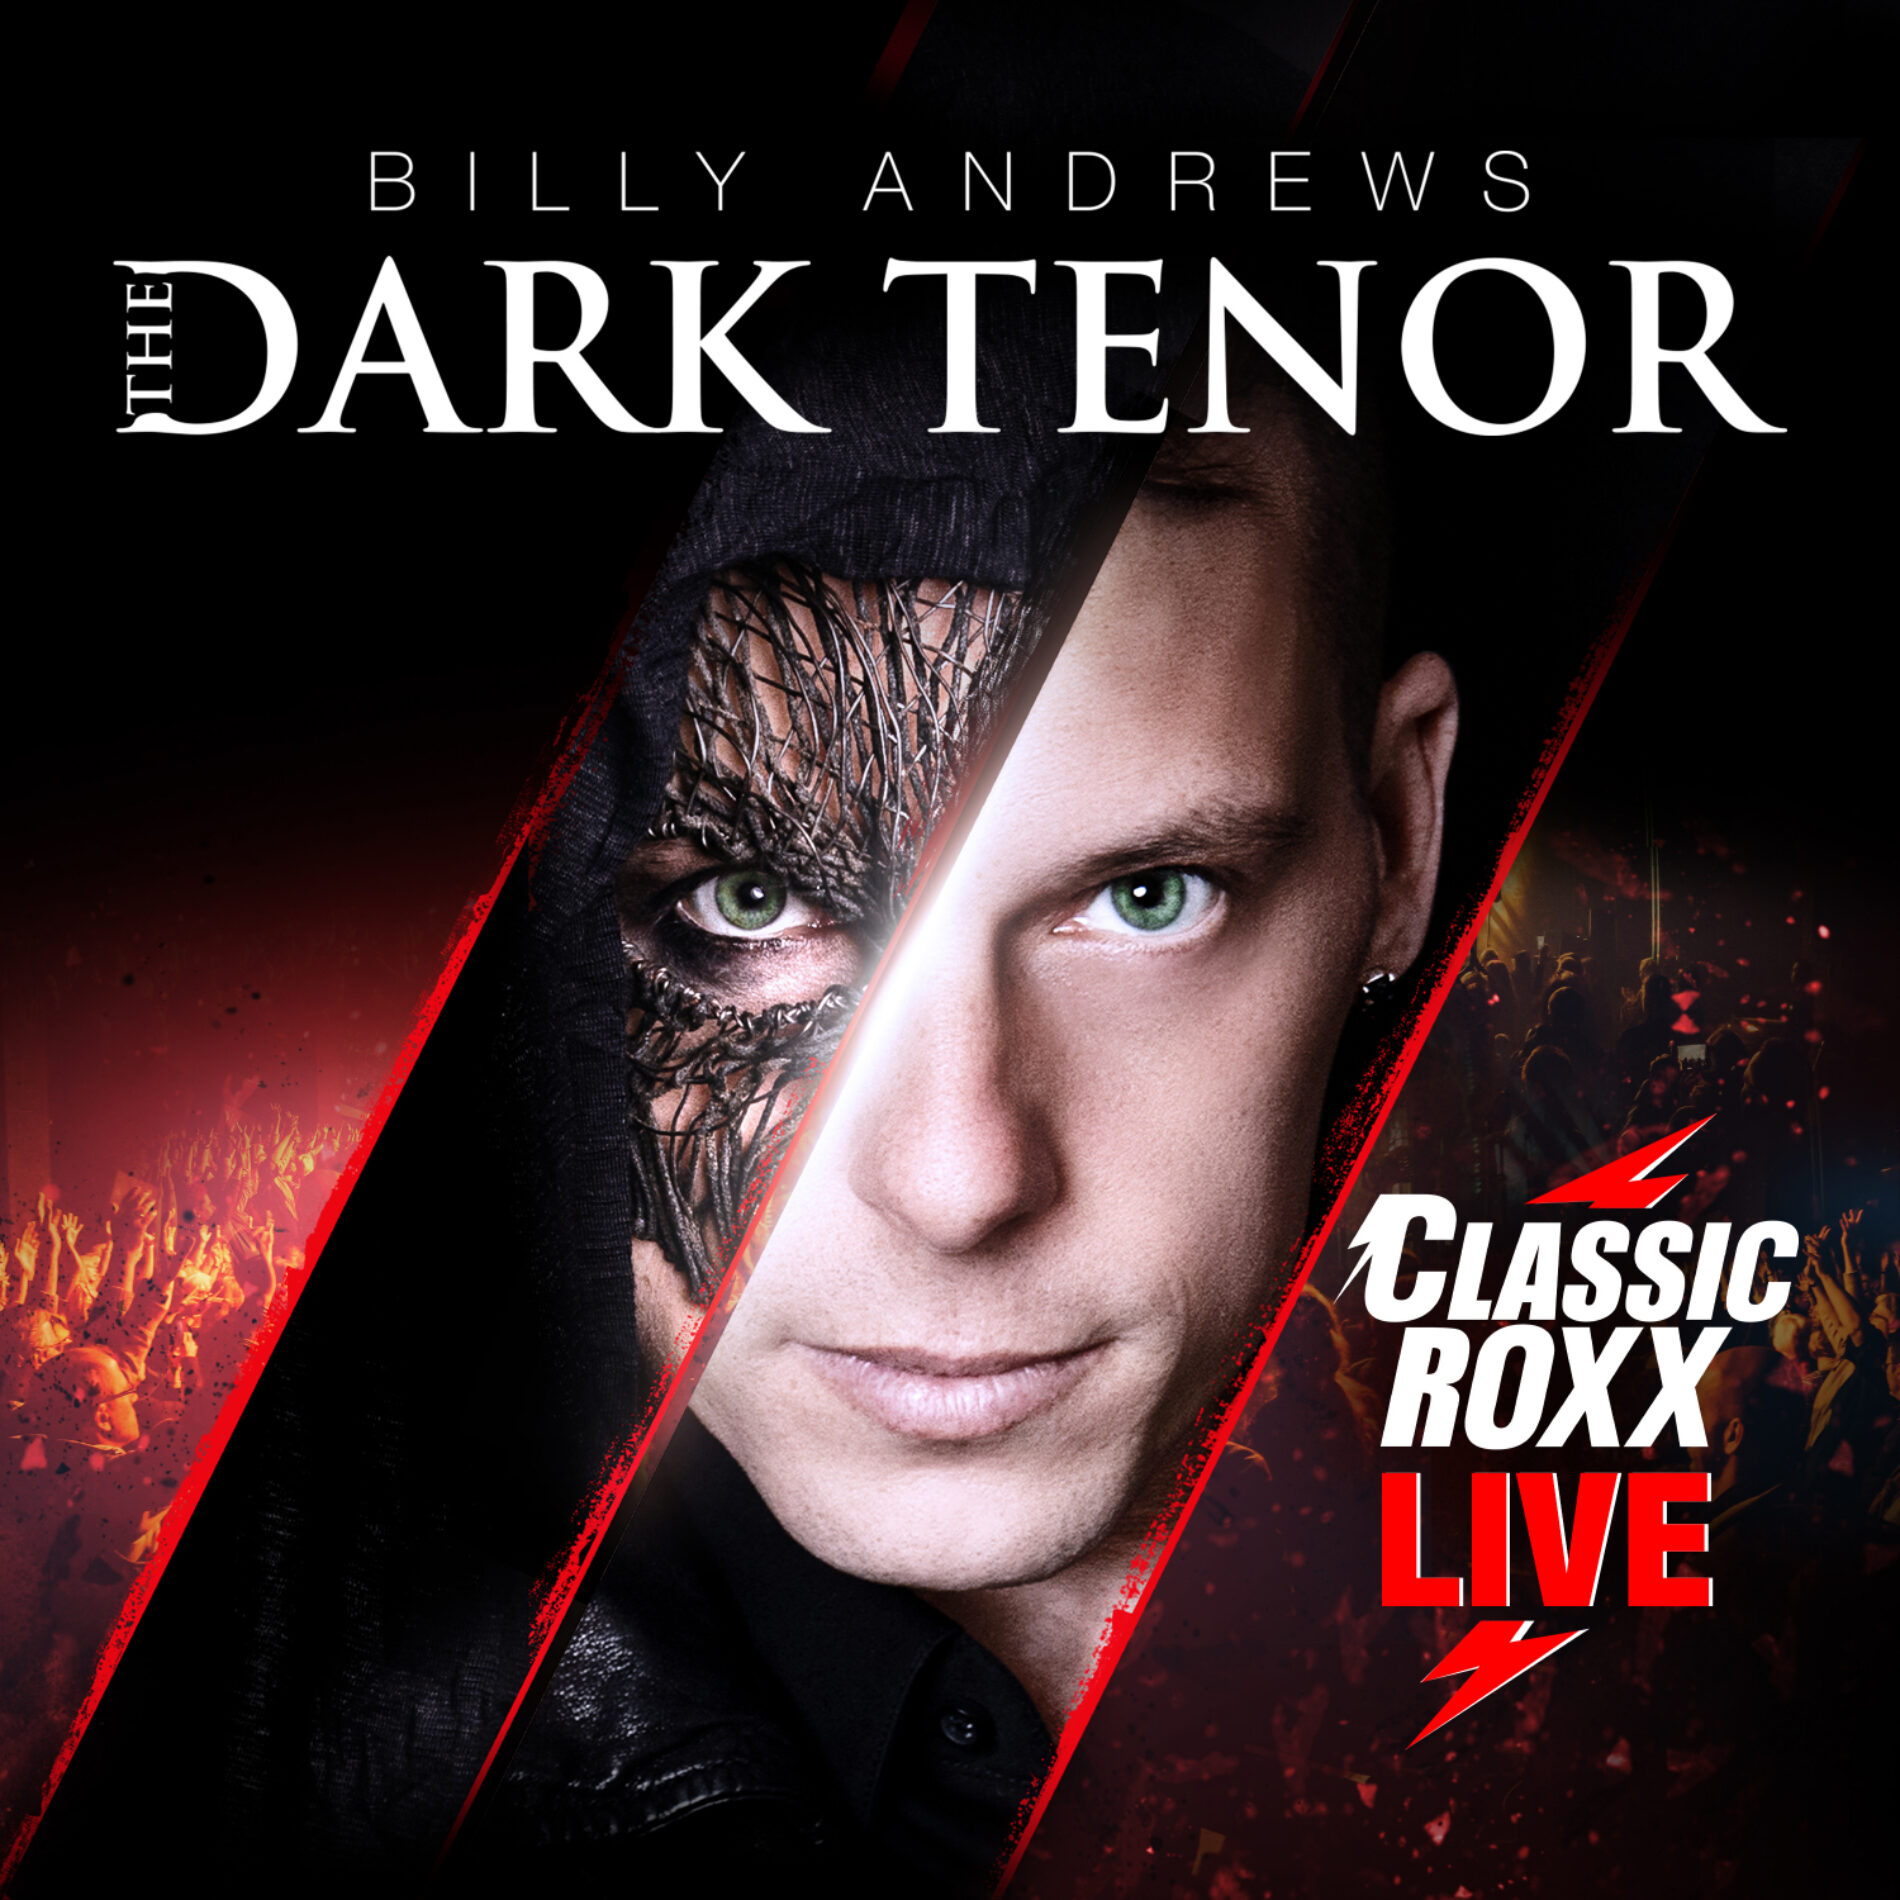 The Dark Tenor – Classic RoXX – Live – REVIEW